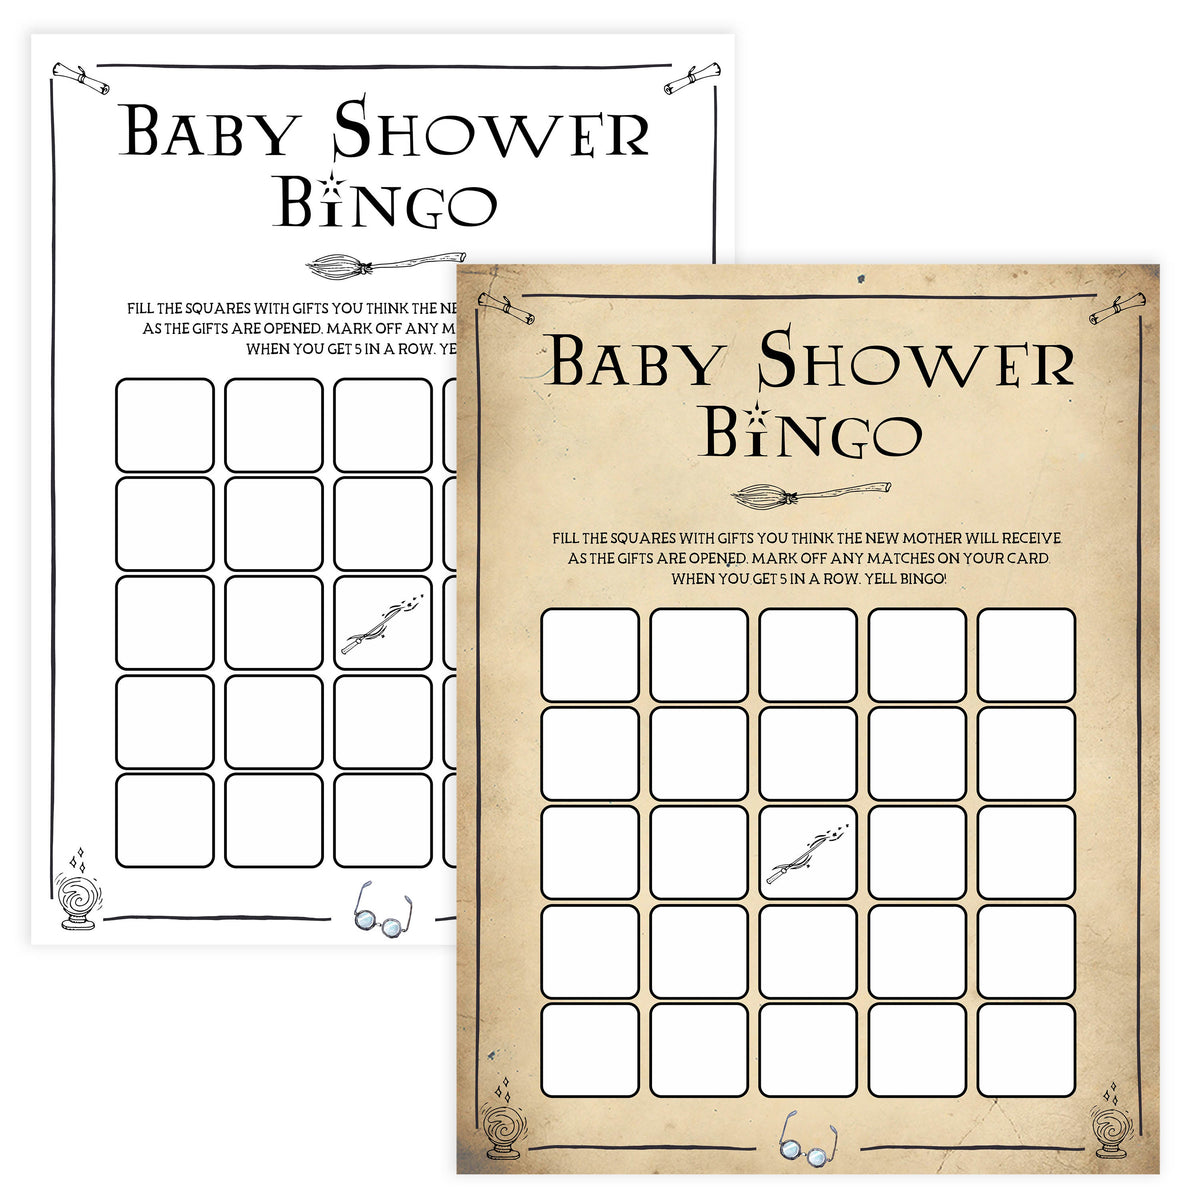 Baby Shower Bingo, Wizard baby shower games, printable baby shower games, Harry Potter baby games, Harry Potter baby shower, fun baby shower games,  fun baby ideas